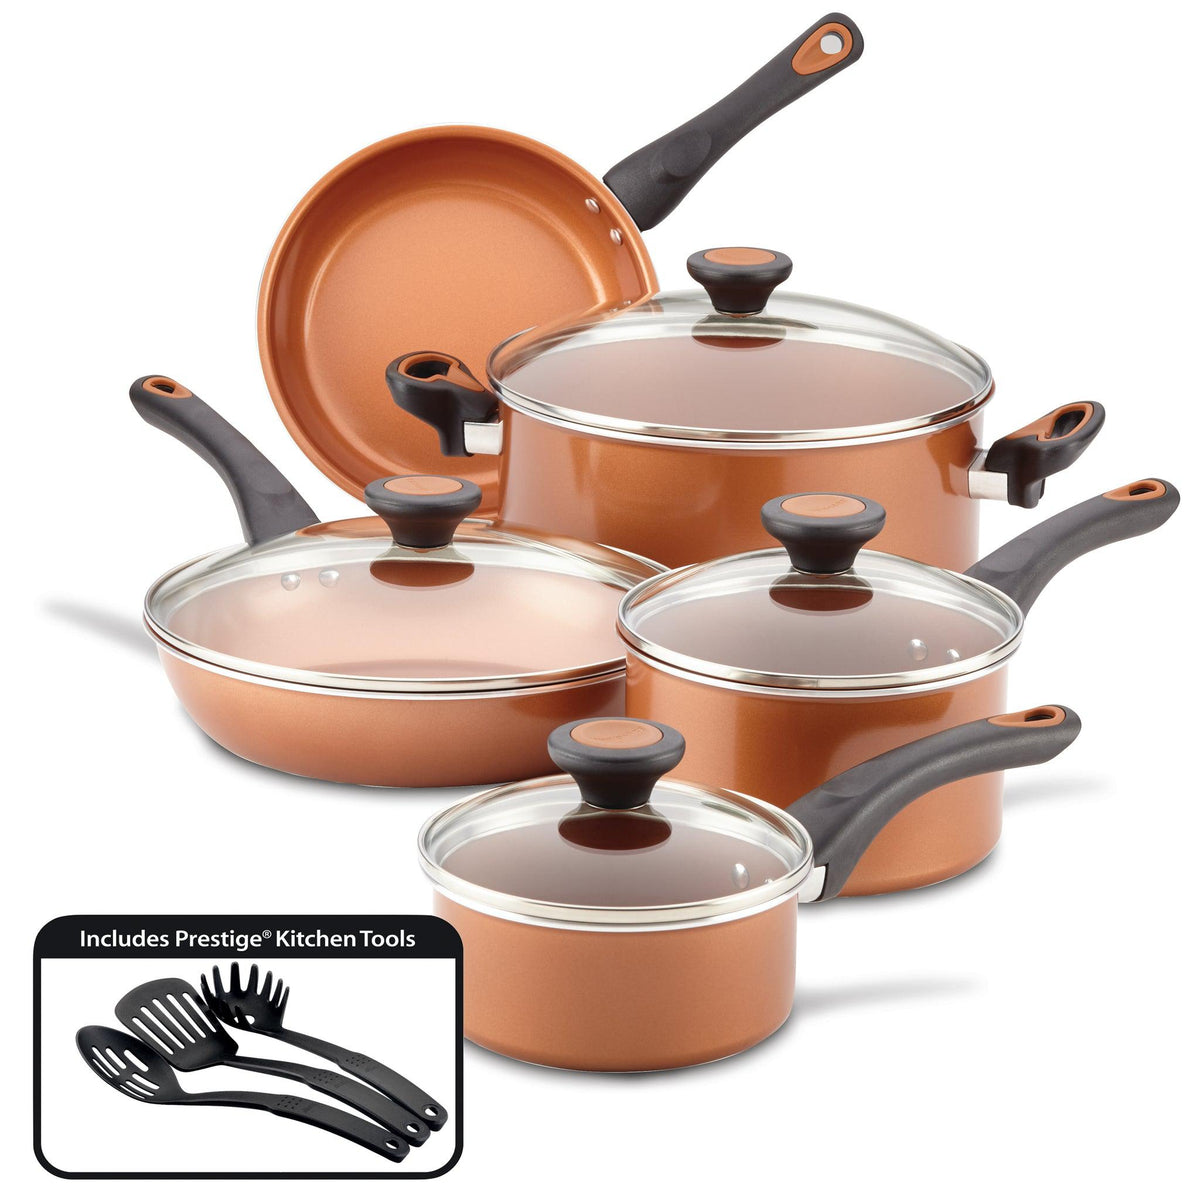  Farberware 17498 Ceramic Nonstick Cookware Pots and